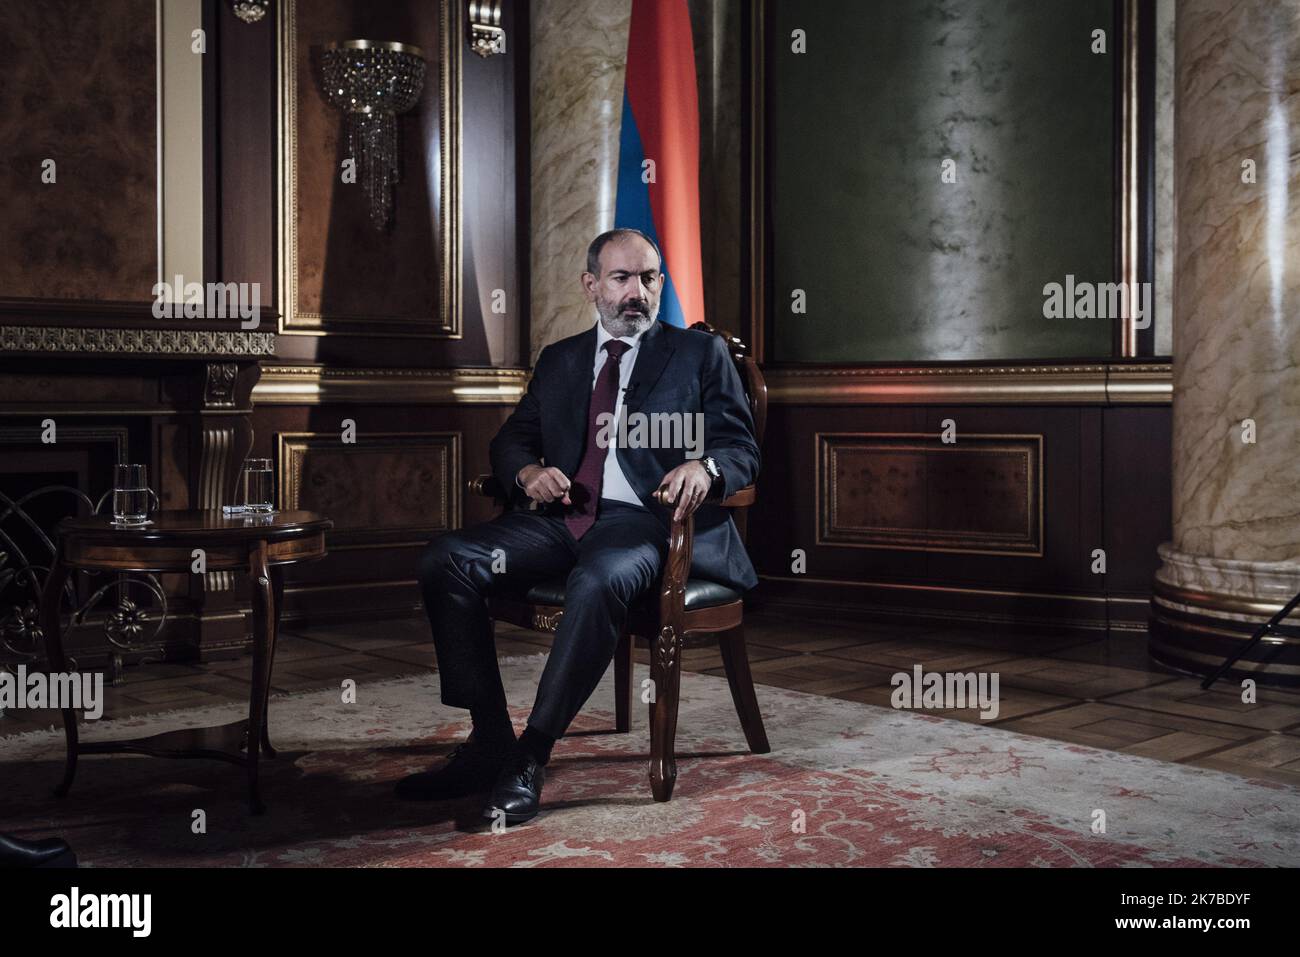 ©Adrien Vautier / Le Pictorium/MAXPPP - Adrien Vautier / Le Pictorium - 15/10/2020 - armenie - Nikol Pashinyan, 1er ministre et chef de l'Etat armenien. / 15/10/2020 - Armenia - Nikol Pashinyan, Prime Minister and Head of State of Armenia. Stock Photo